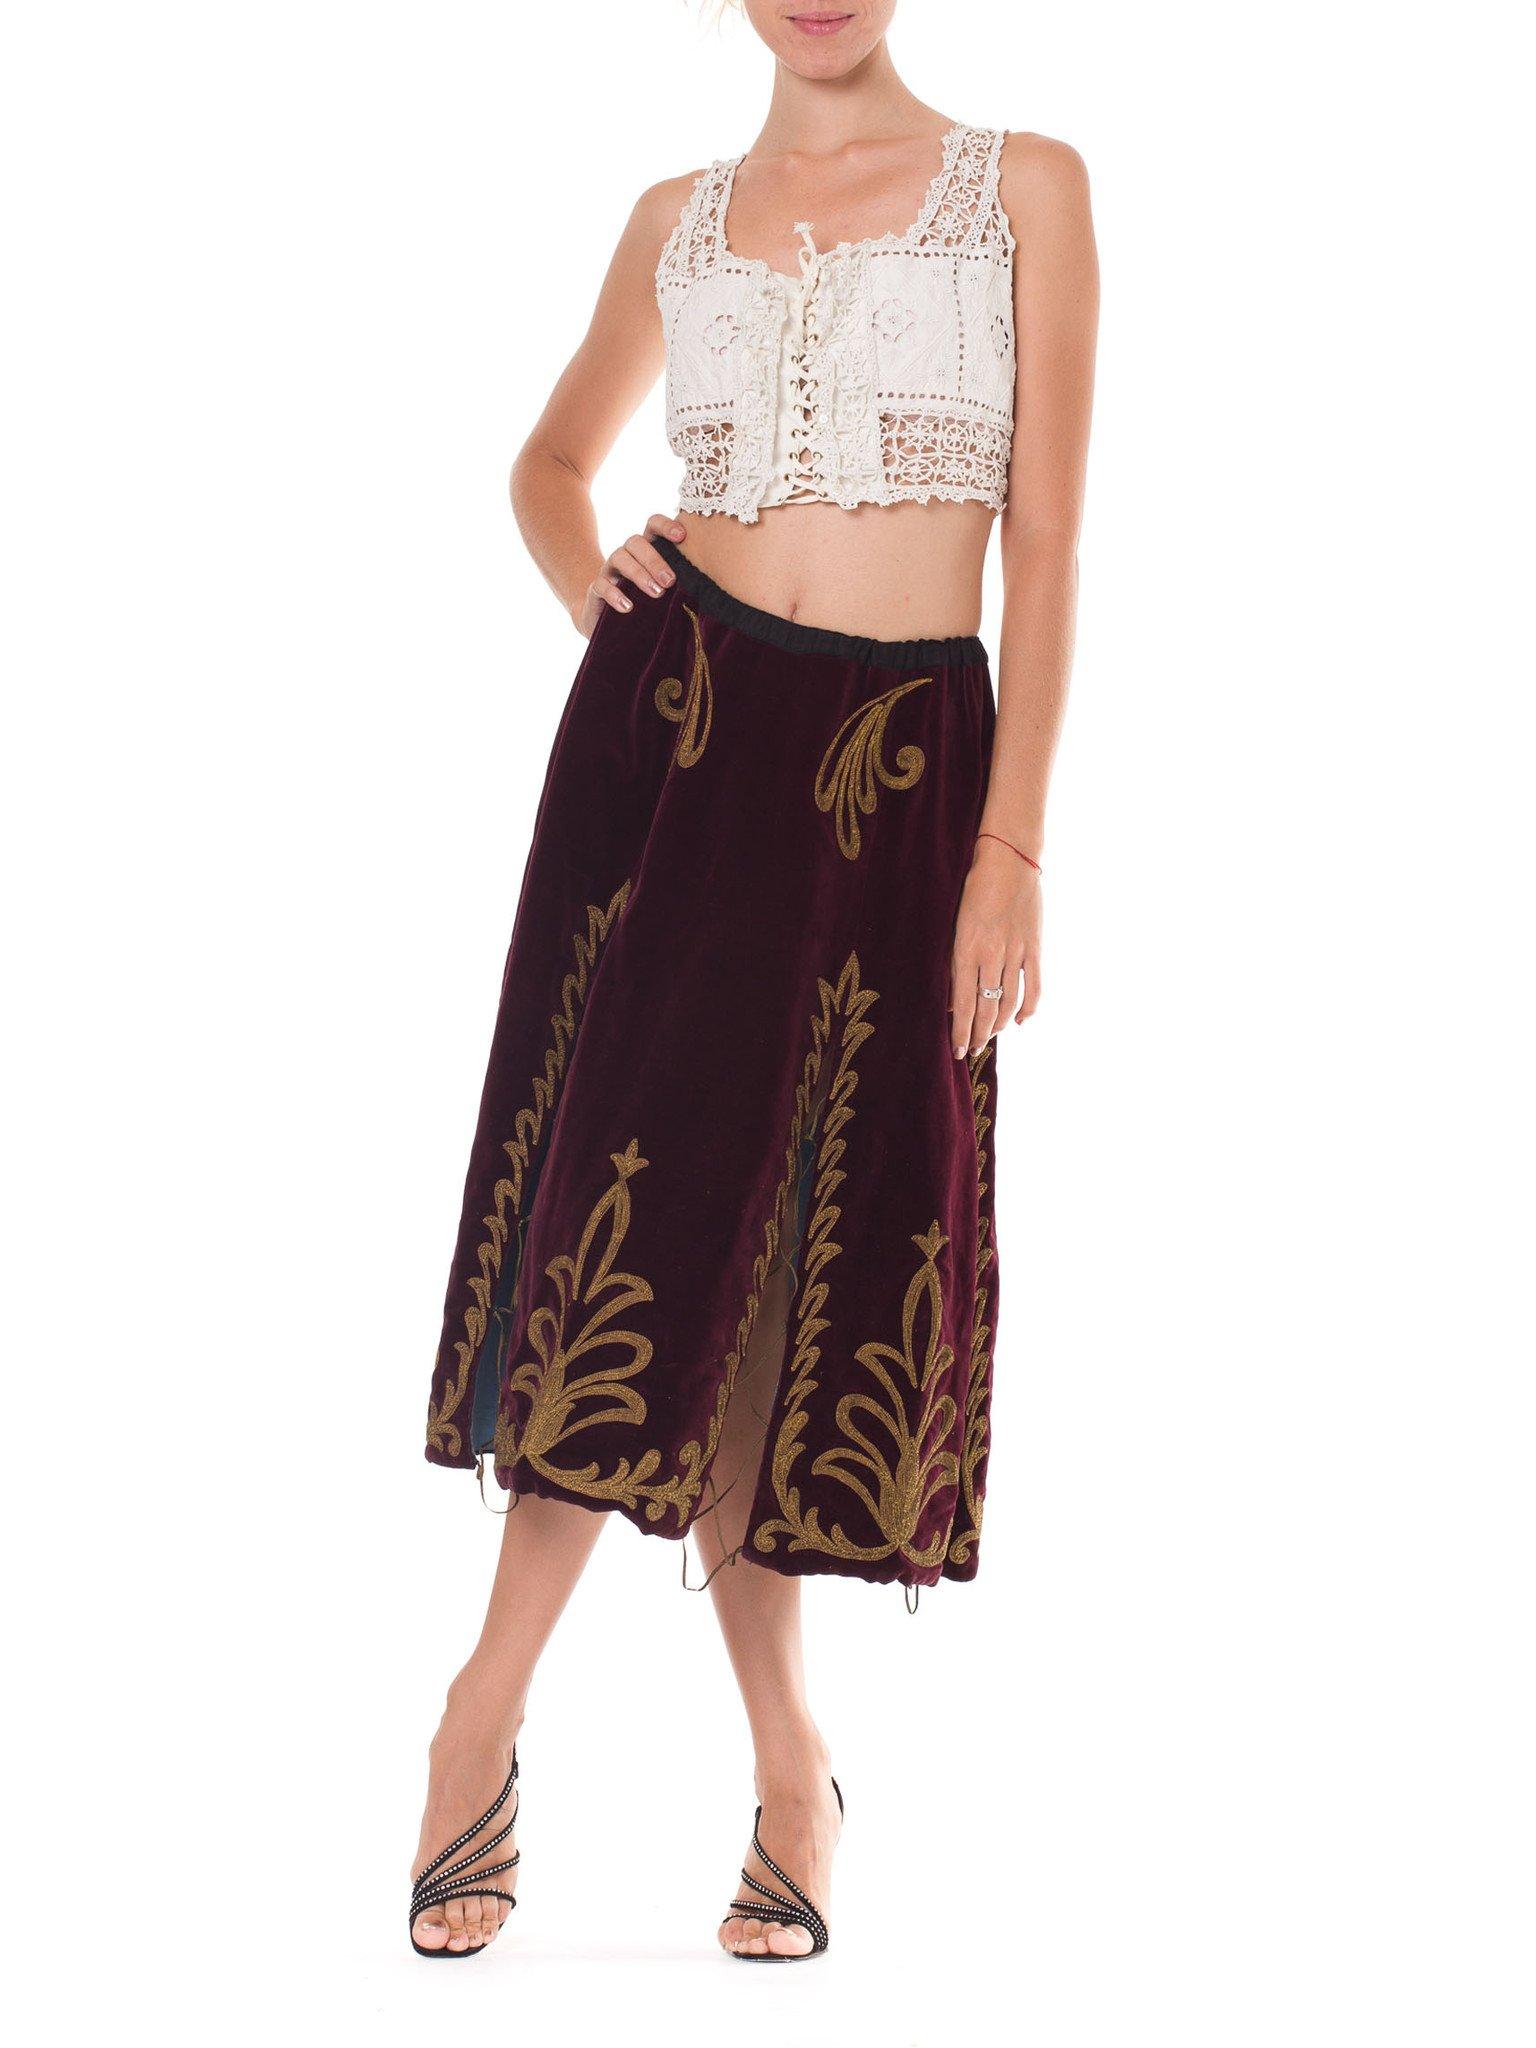 zara velvet skirt with rhinestones